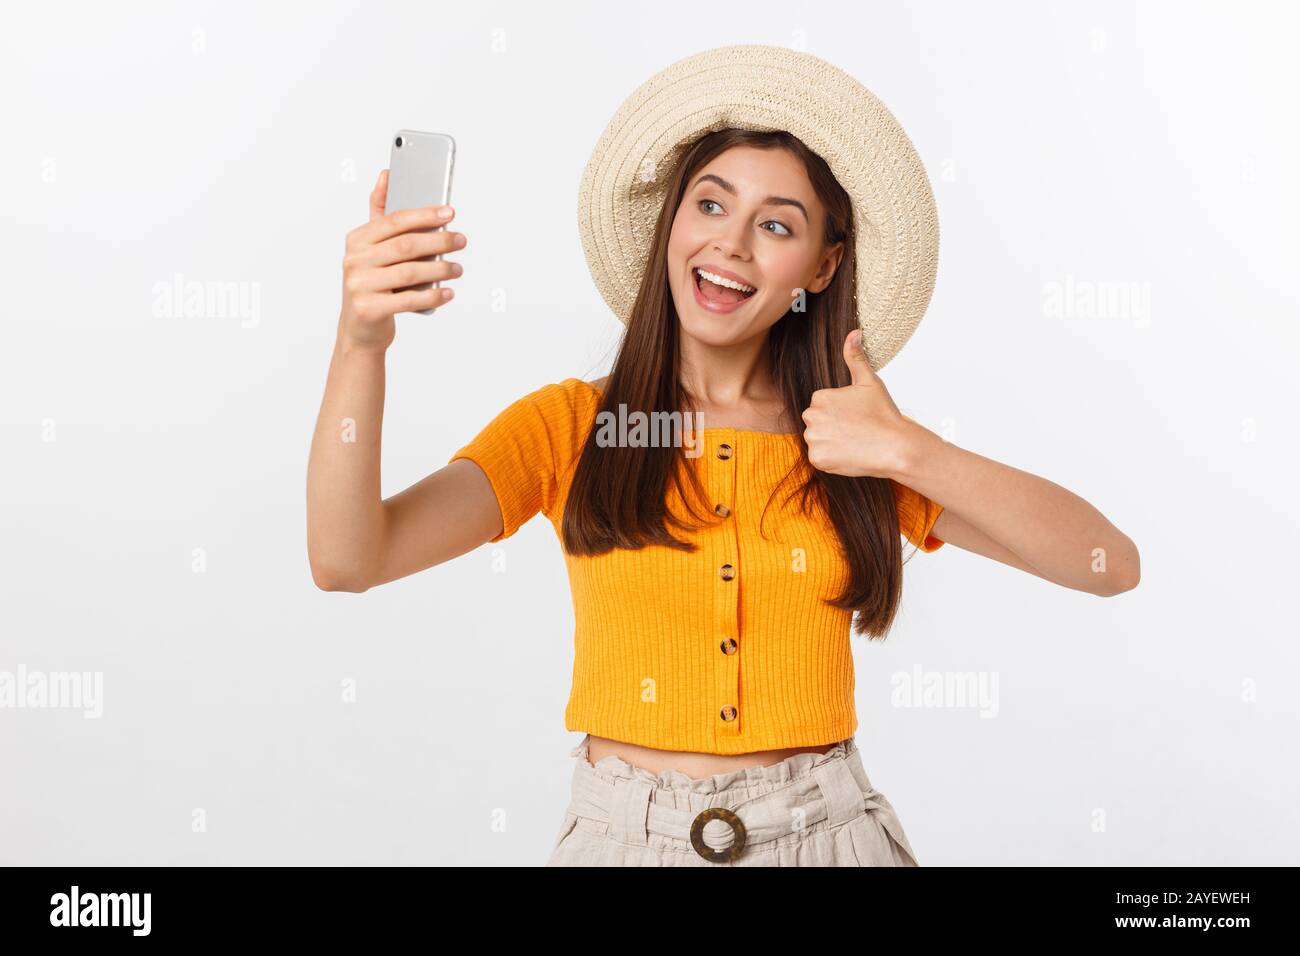 Junge kaukasier Frau genießen die selfie mit sich selbst isoliert auf weißem Hintergrund Sommer reisen Konzept. Stockfoto